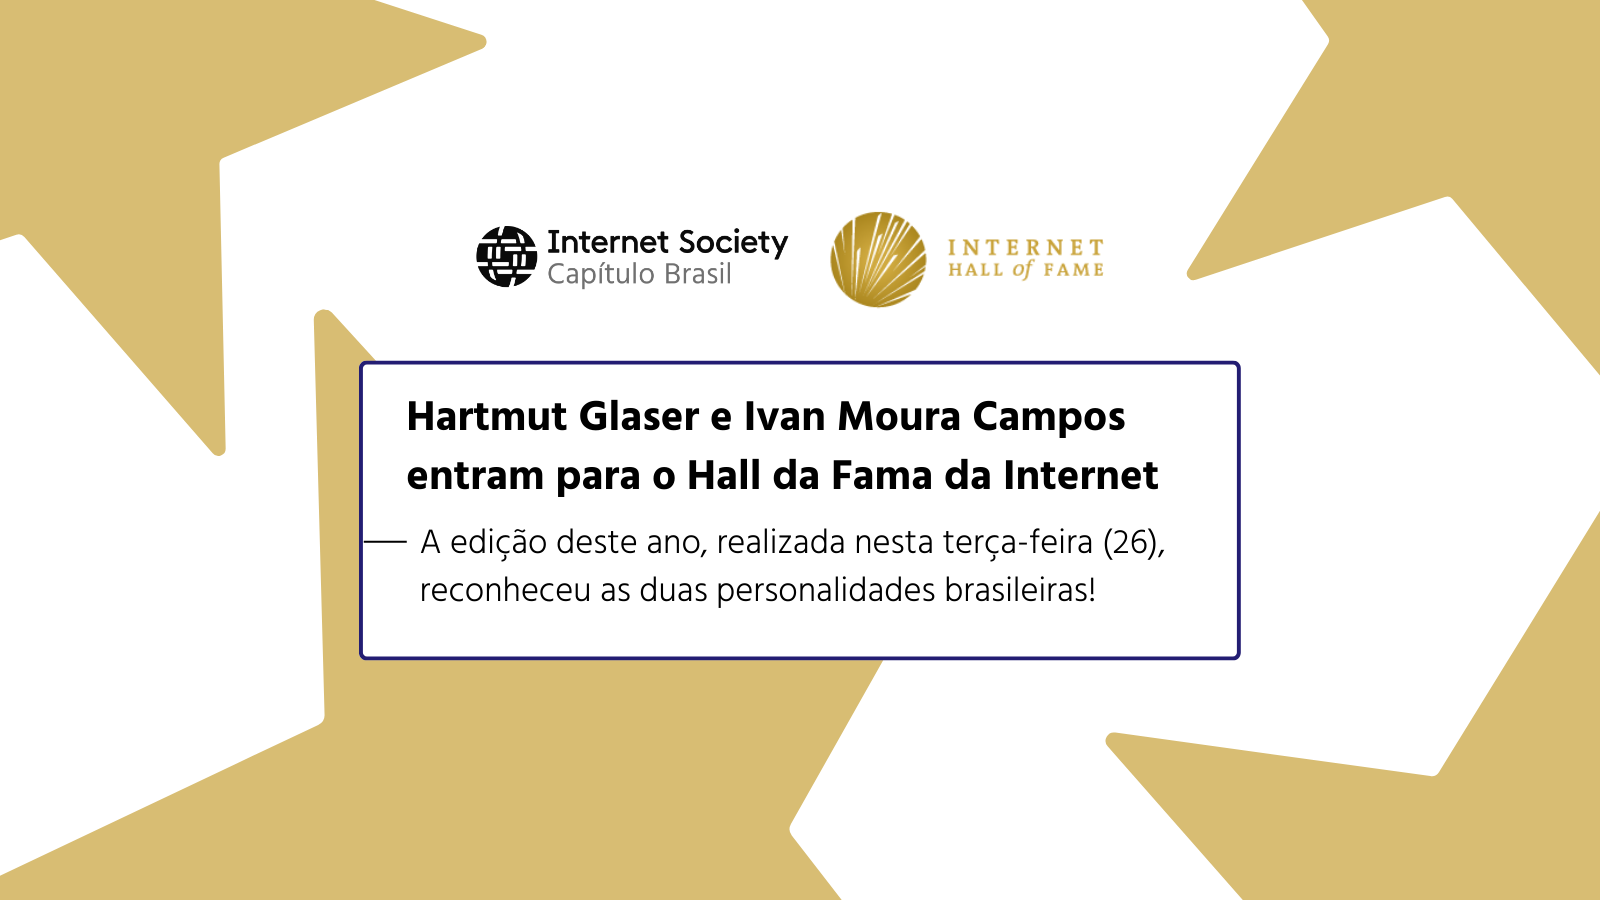 Hartmut Glaser e Ivan Moura Campos entram para o Hall da Fama da Internet!